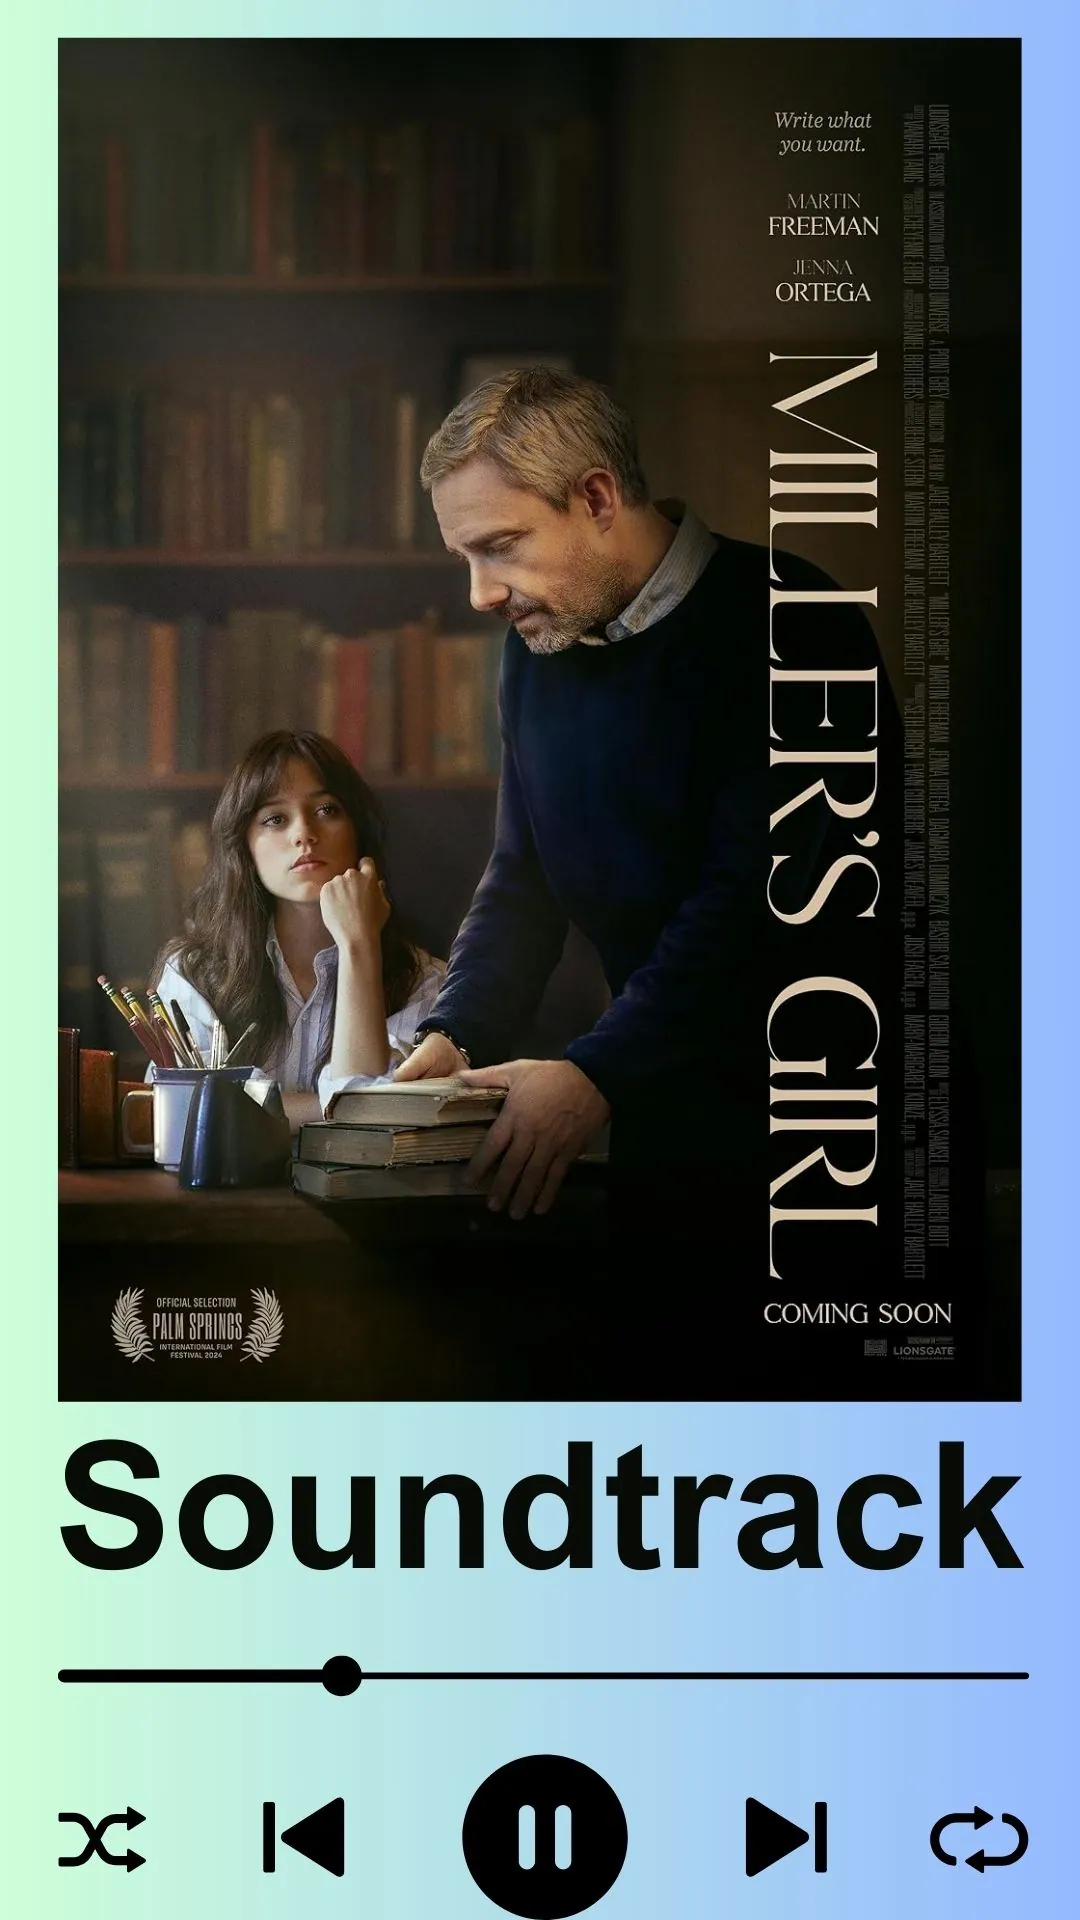 Miller's Girl Soundtrack